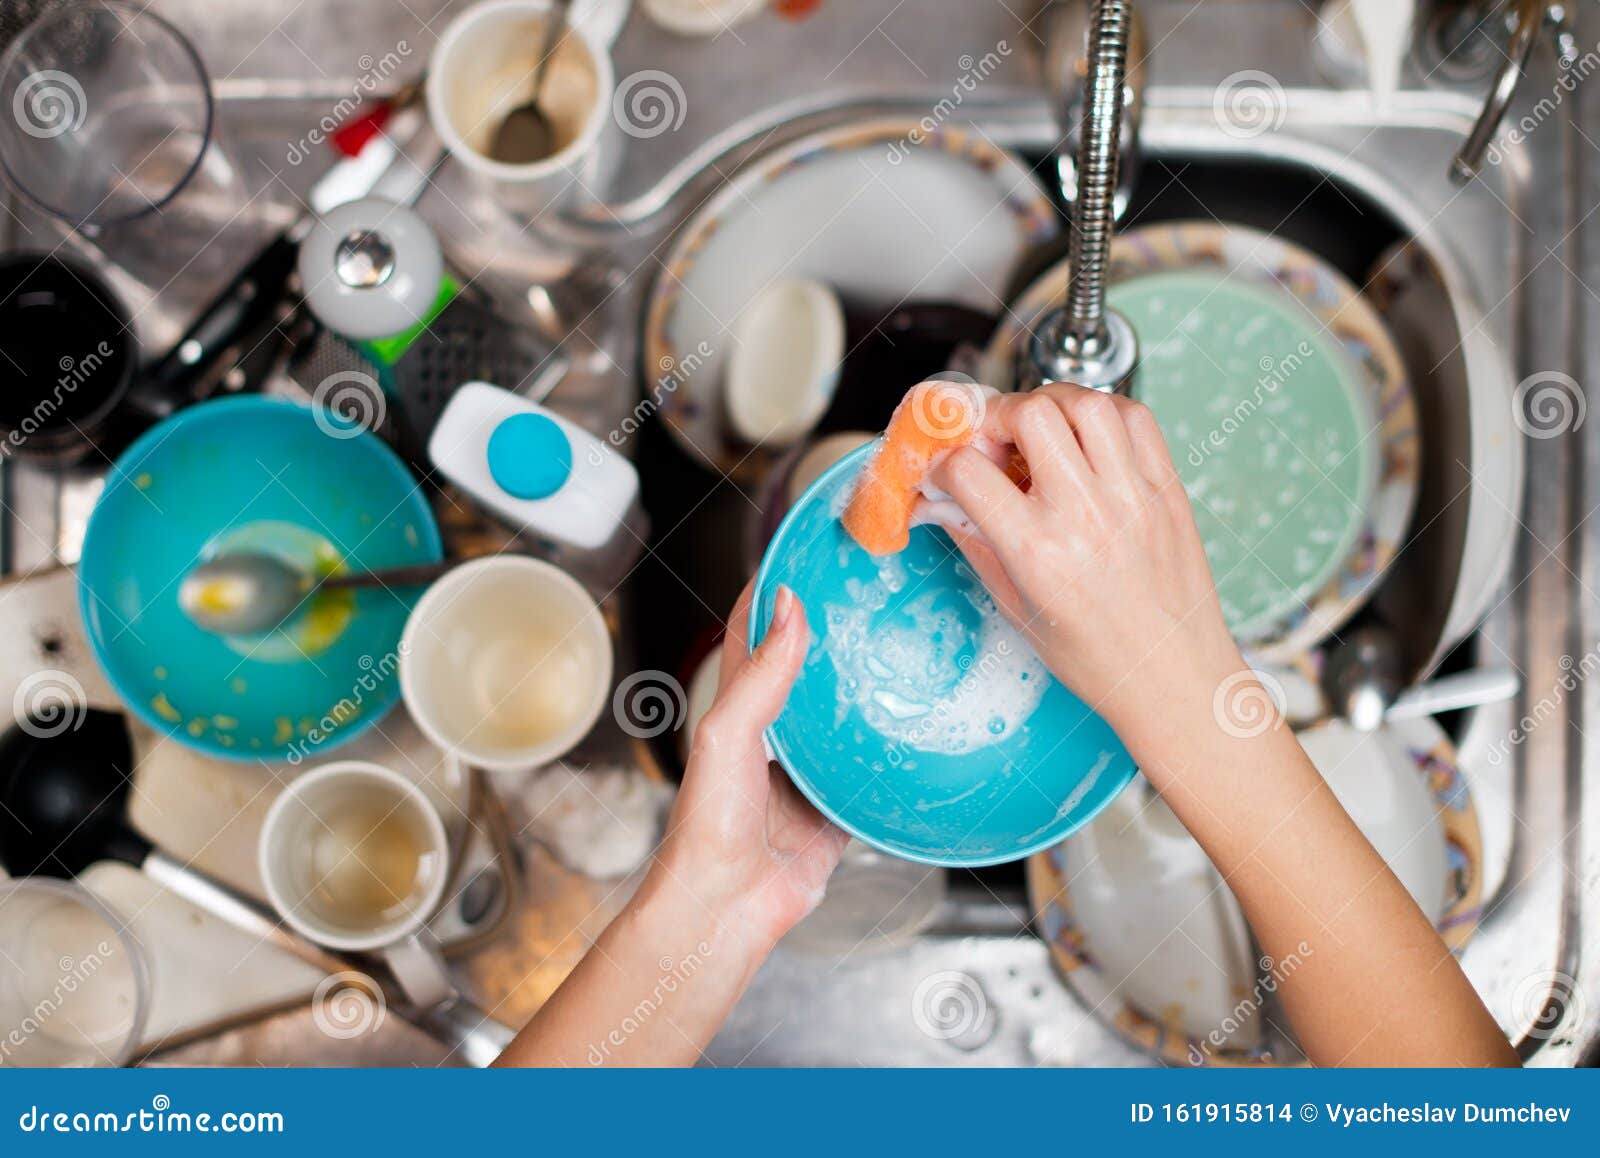 Мыть много много посуды. Мытье посуды. Грязная посуда. Мытье грязной посуды. Грязная посуда в раковине.